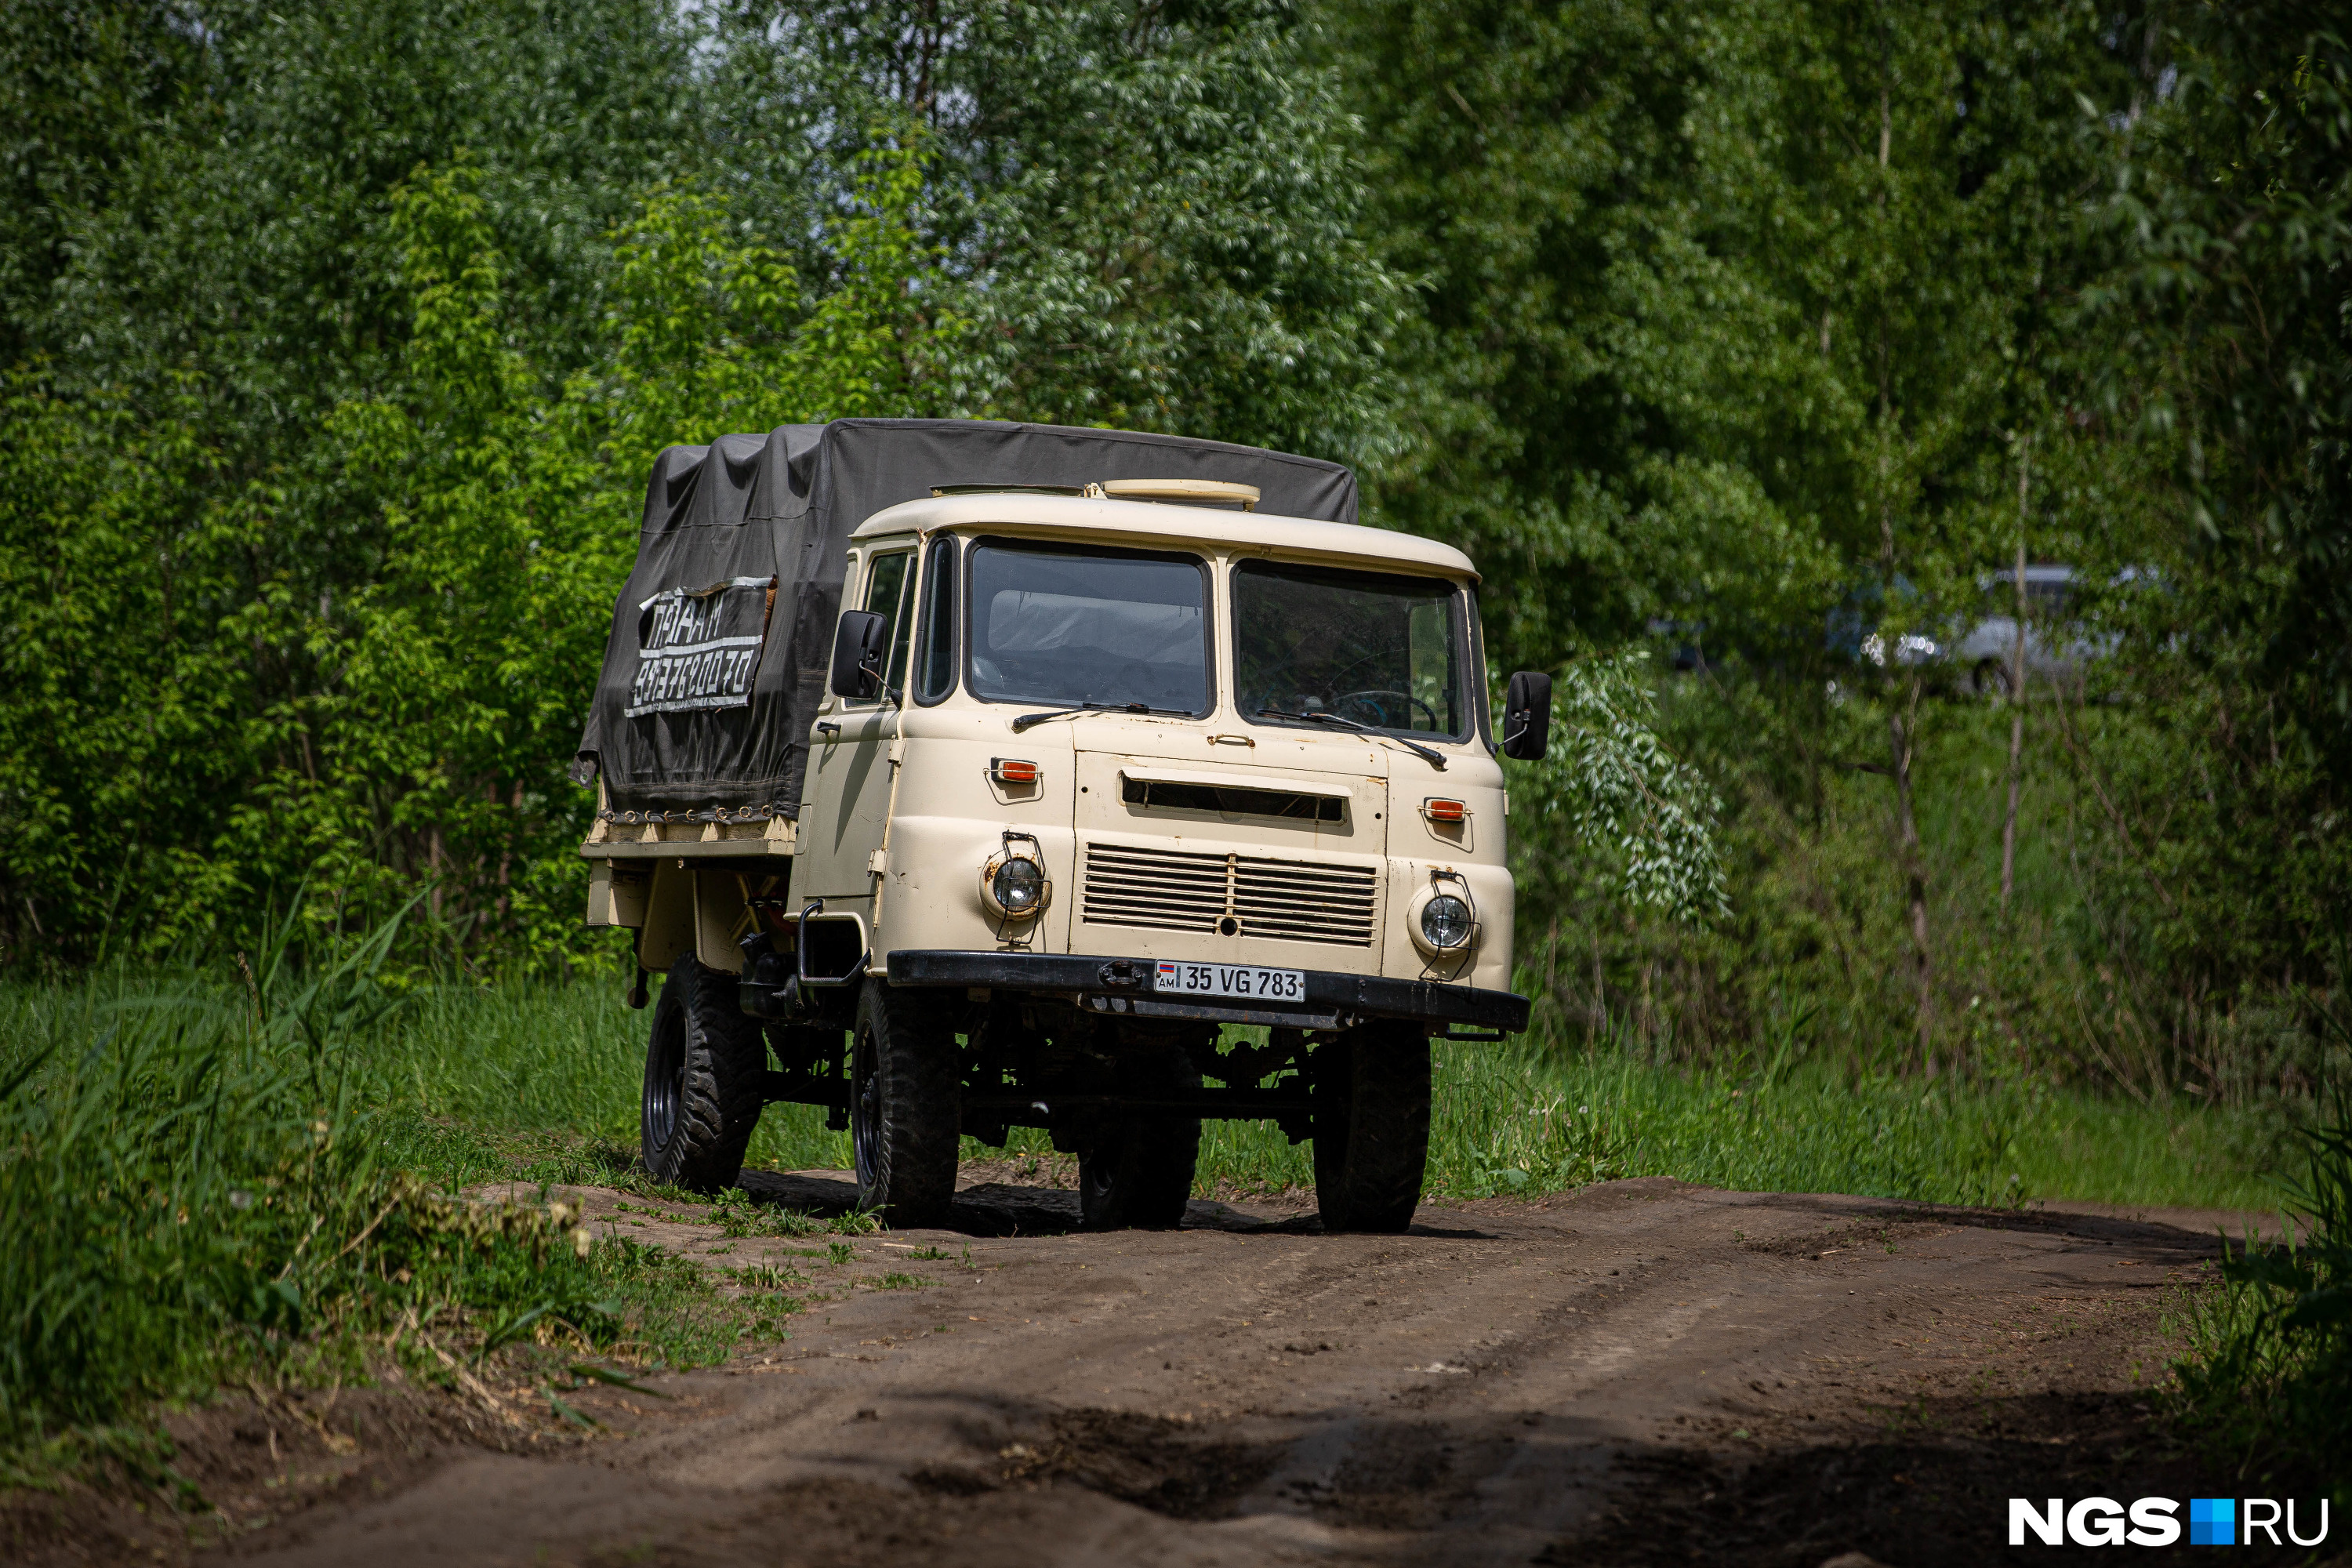 Тридцатилетний грузовик органично смотрится на ухабистых новосибирских дорогах: как будто создан специально для них